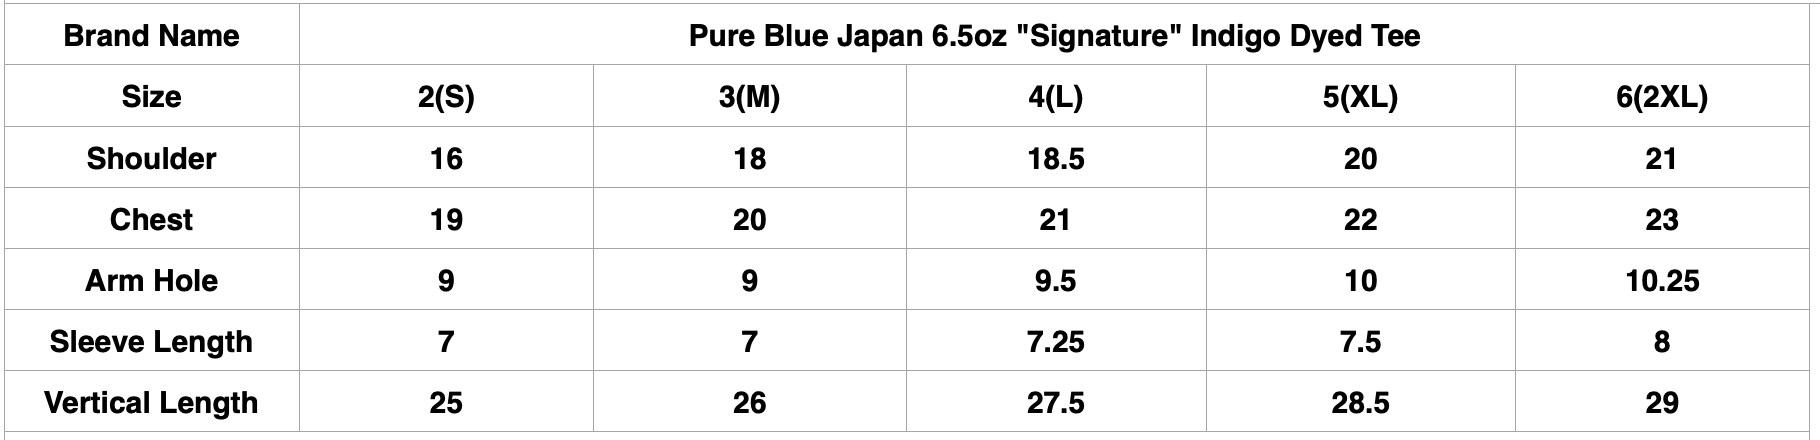 Pure Blue Japan 6.5oz "Signature" Indigo Dyed Tee (Icy Indigo)